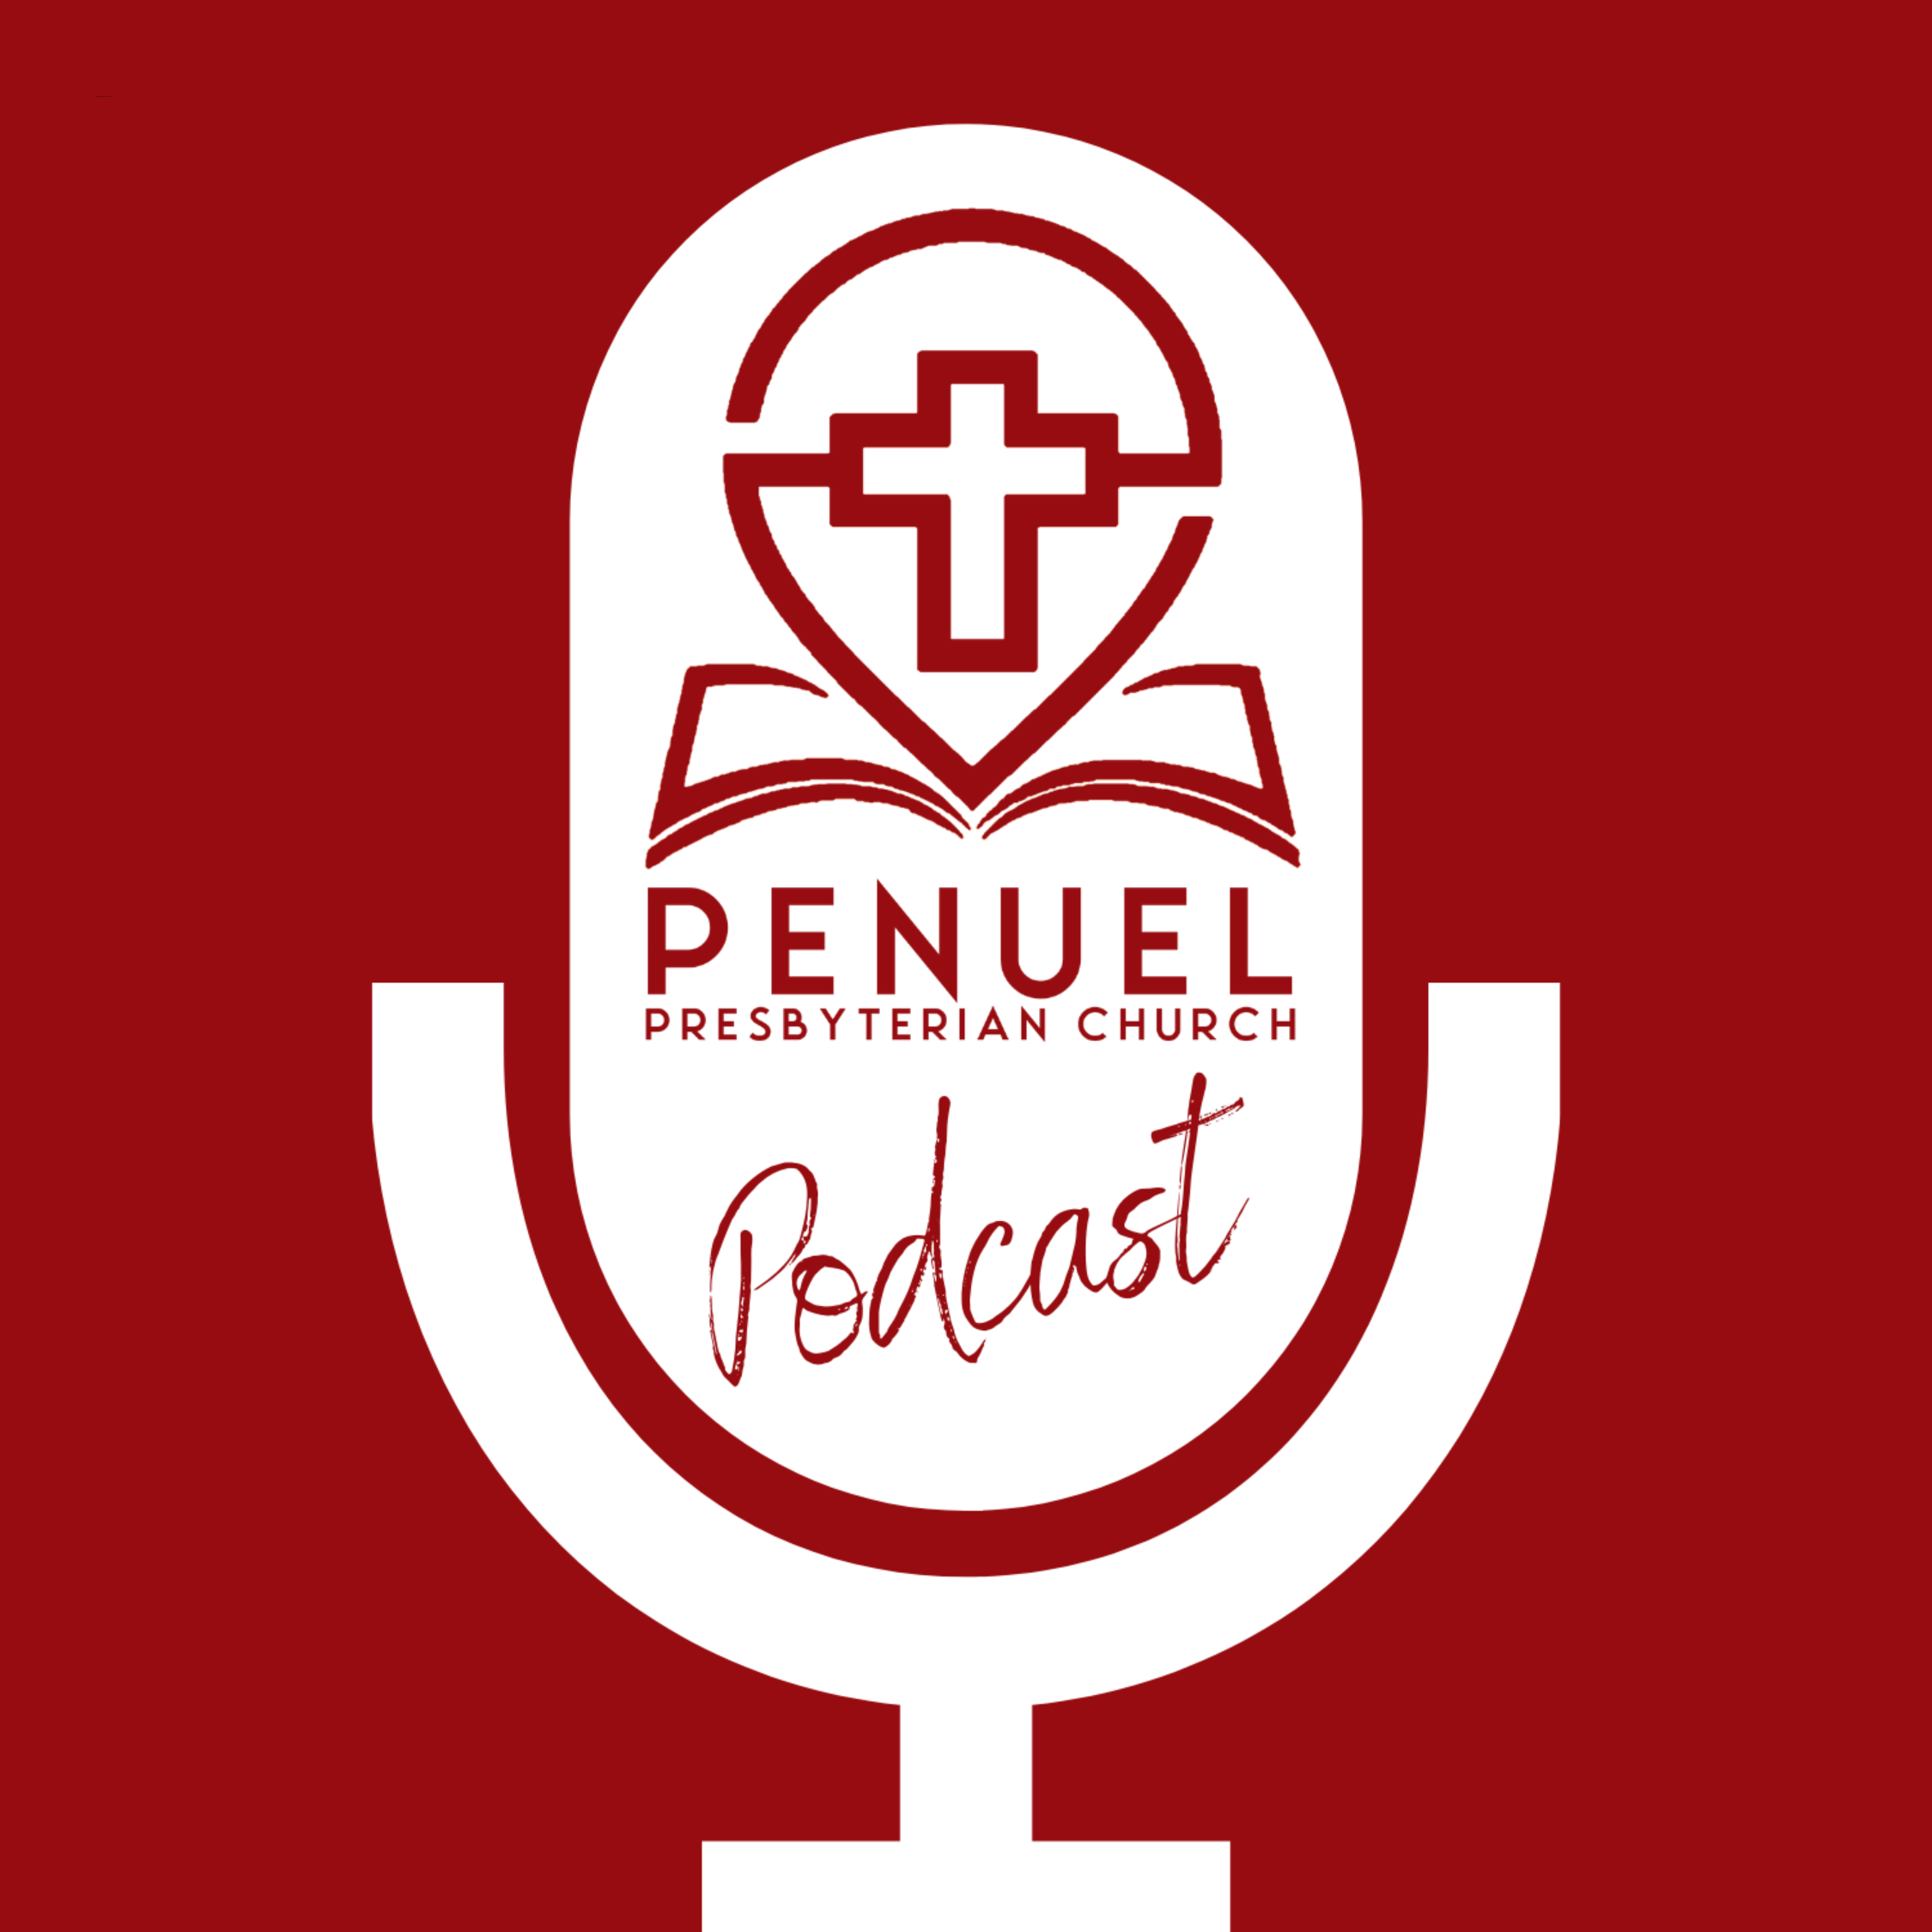 Penuel Presbyterian Church - Podcast